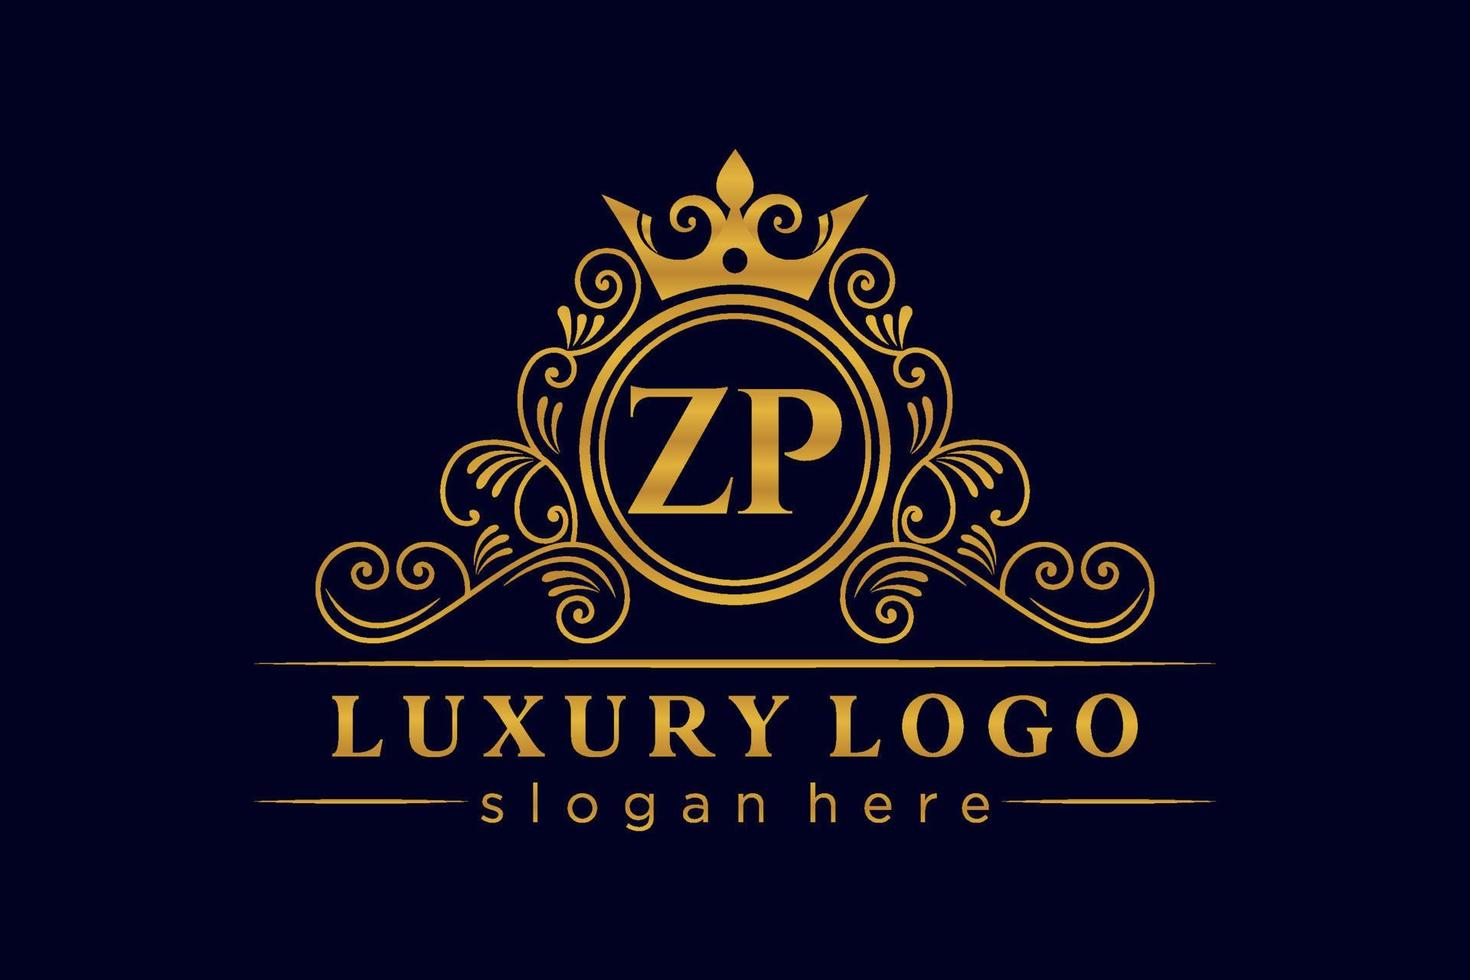 ZP Initial Letter Gold calligraphic feminine floral hand drawn heraldic monogram antique vintage style luxury logo design Premium Vector